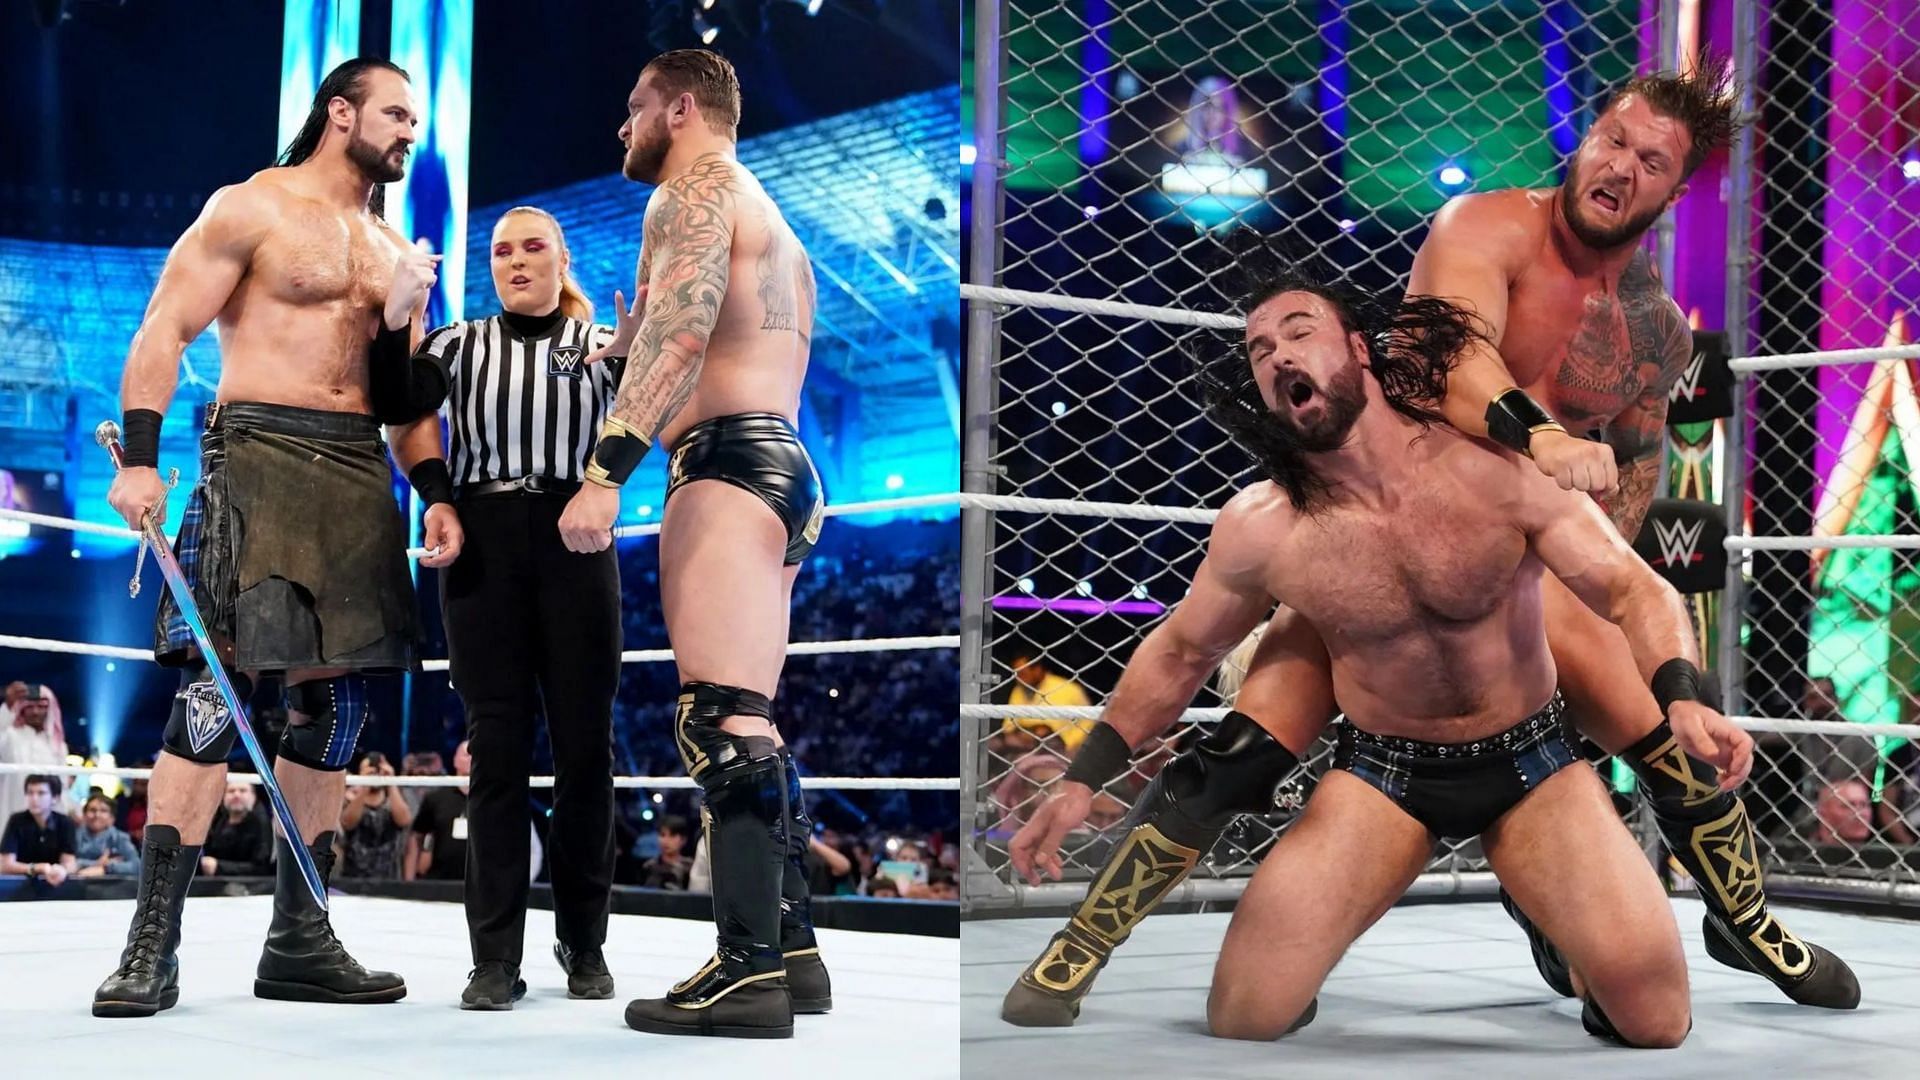 Drew McIntyre defeated Karrion Kross at WWE Crown Jewel 2022